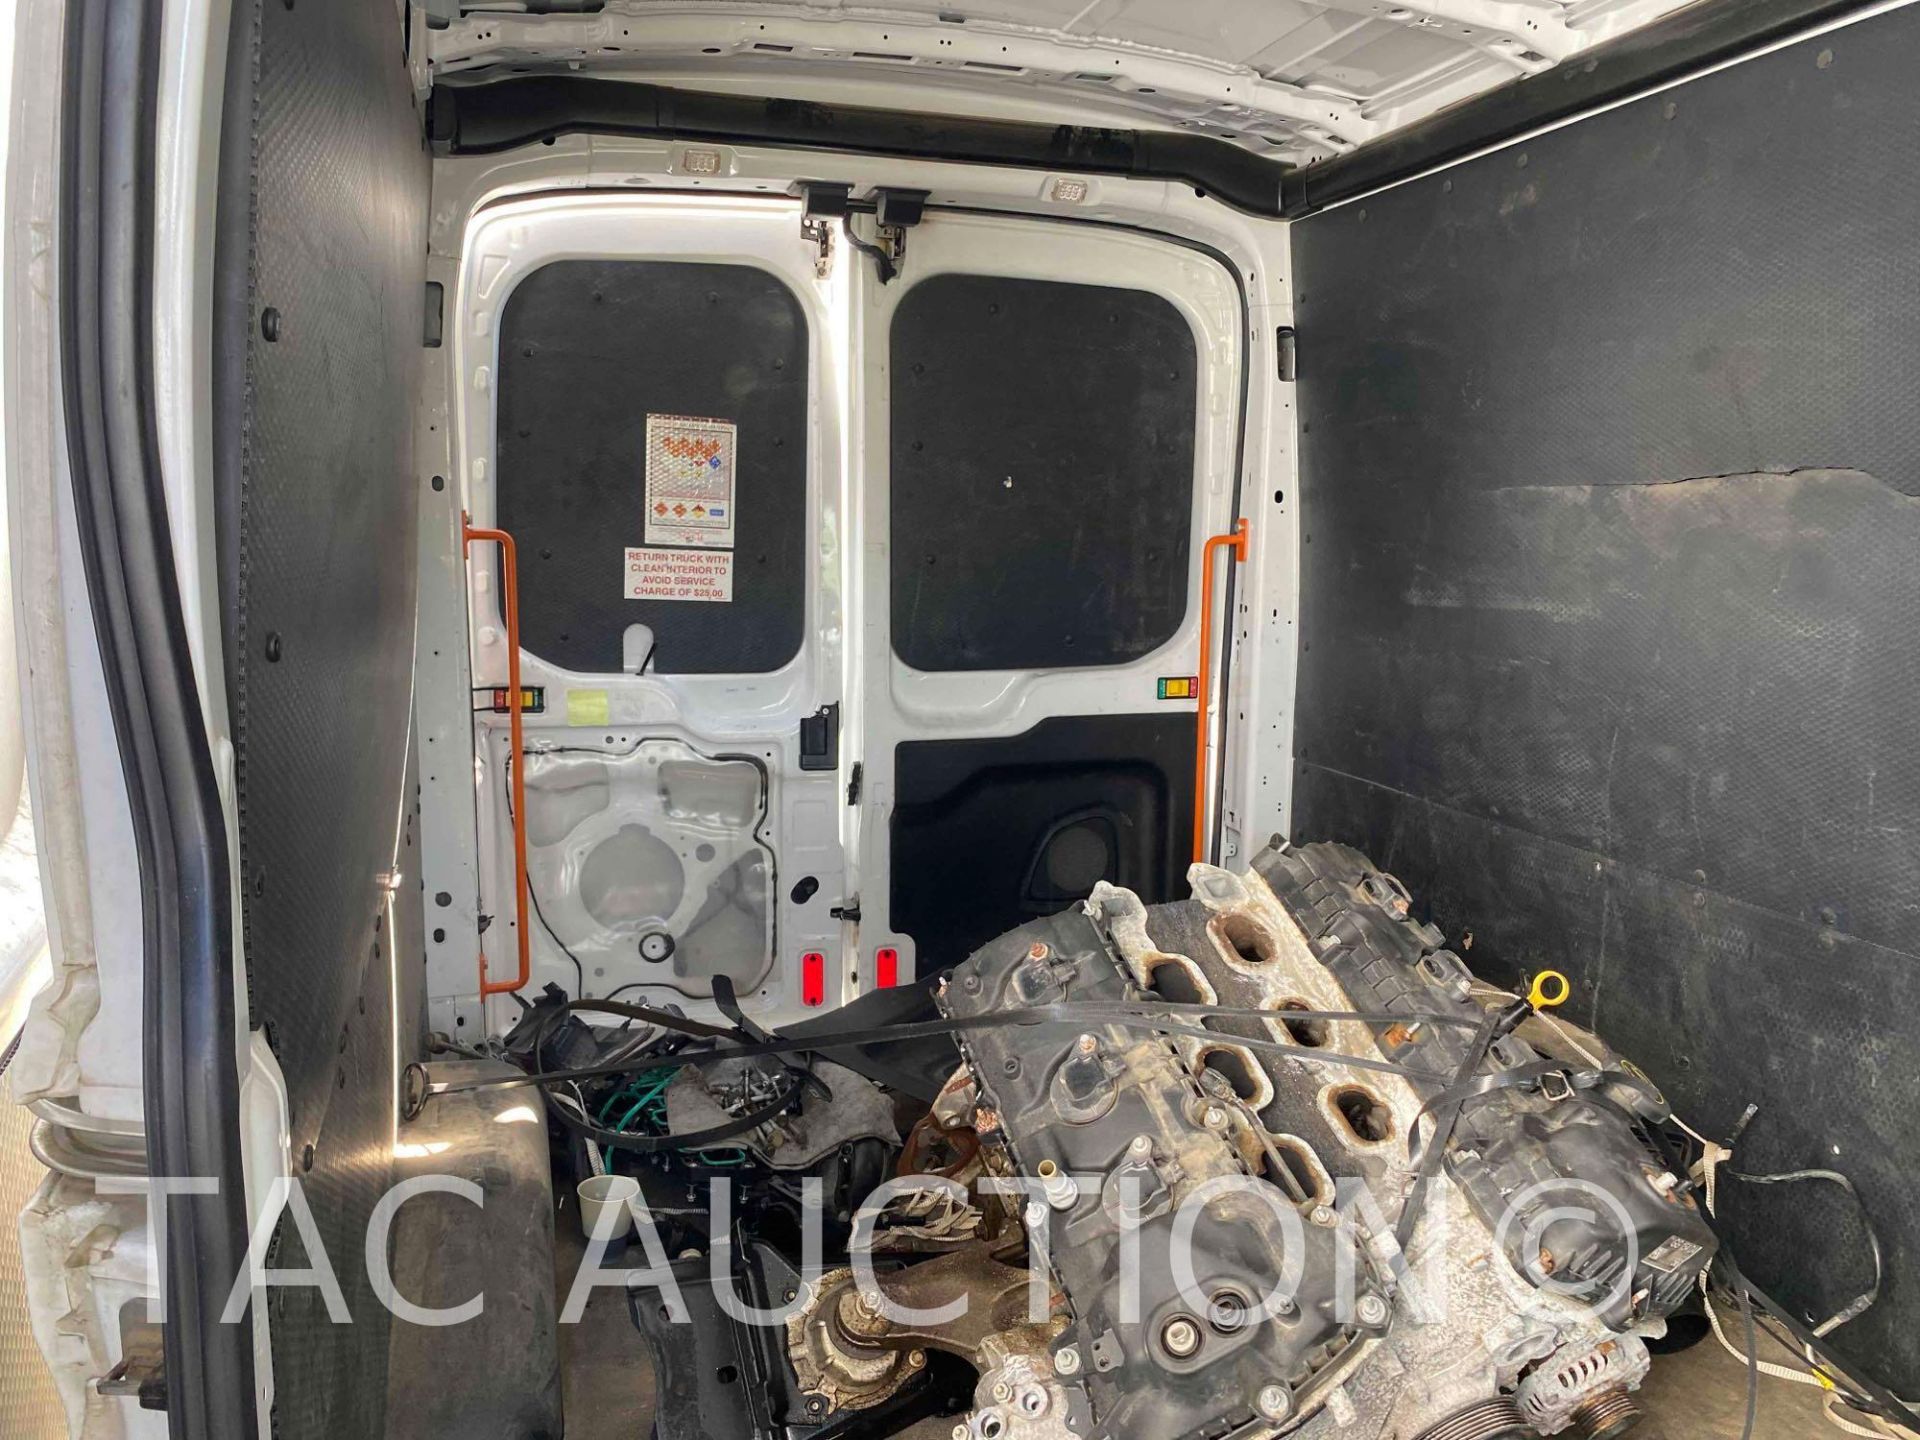 2019 Ford Transit 150 Cargo Van - Image 16 of 41